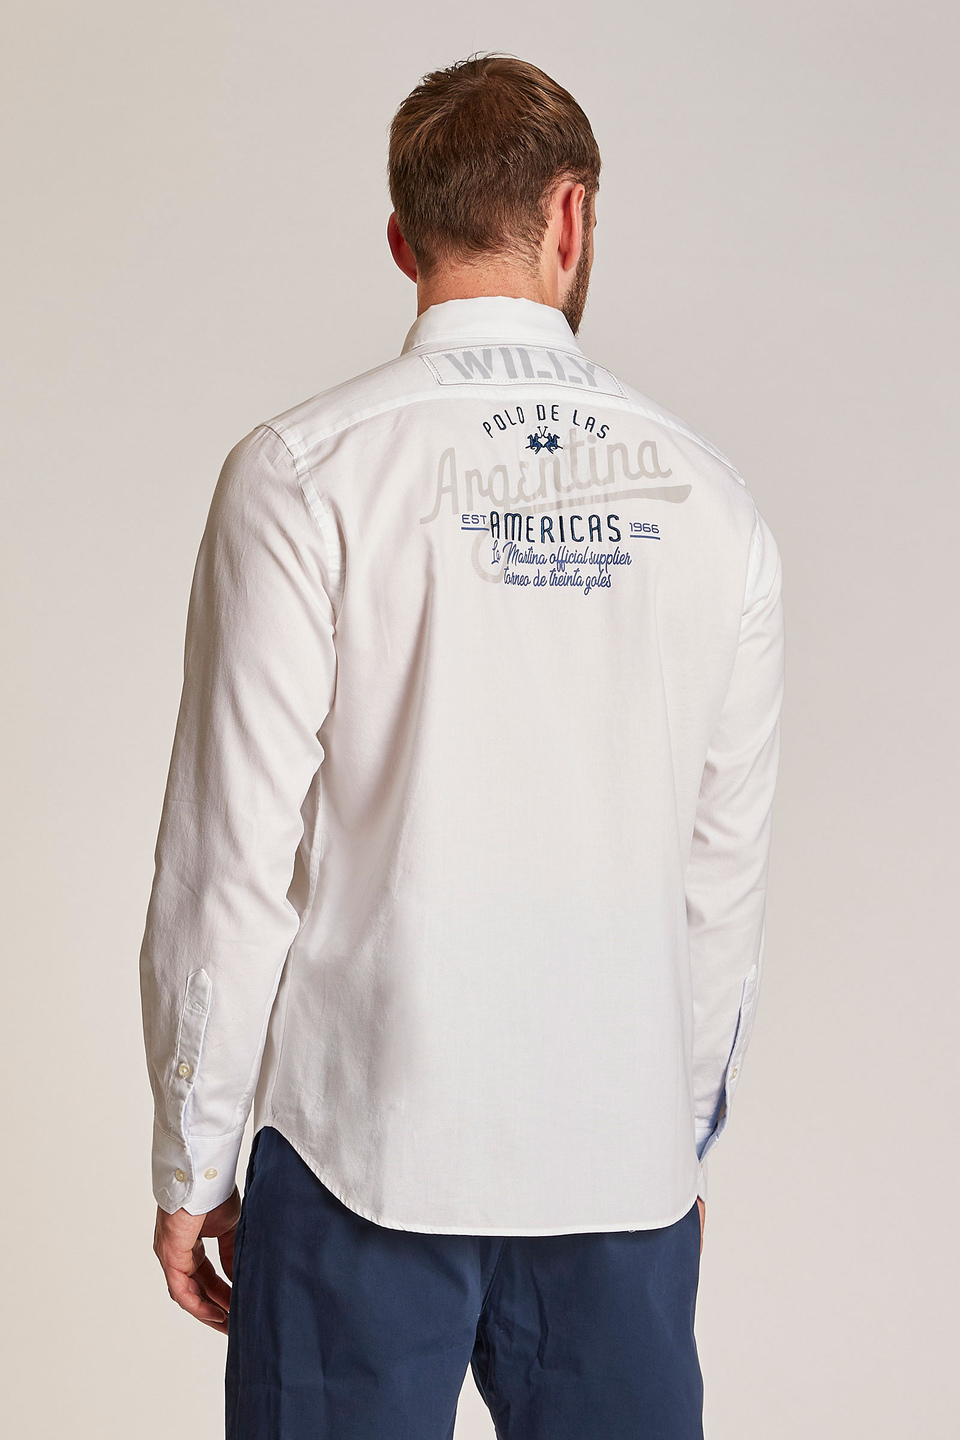 Chemise homme à manches longues, coupe classique et broderie contrastante | La Martina - Official Online Shop